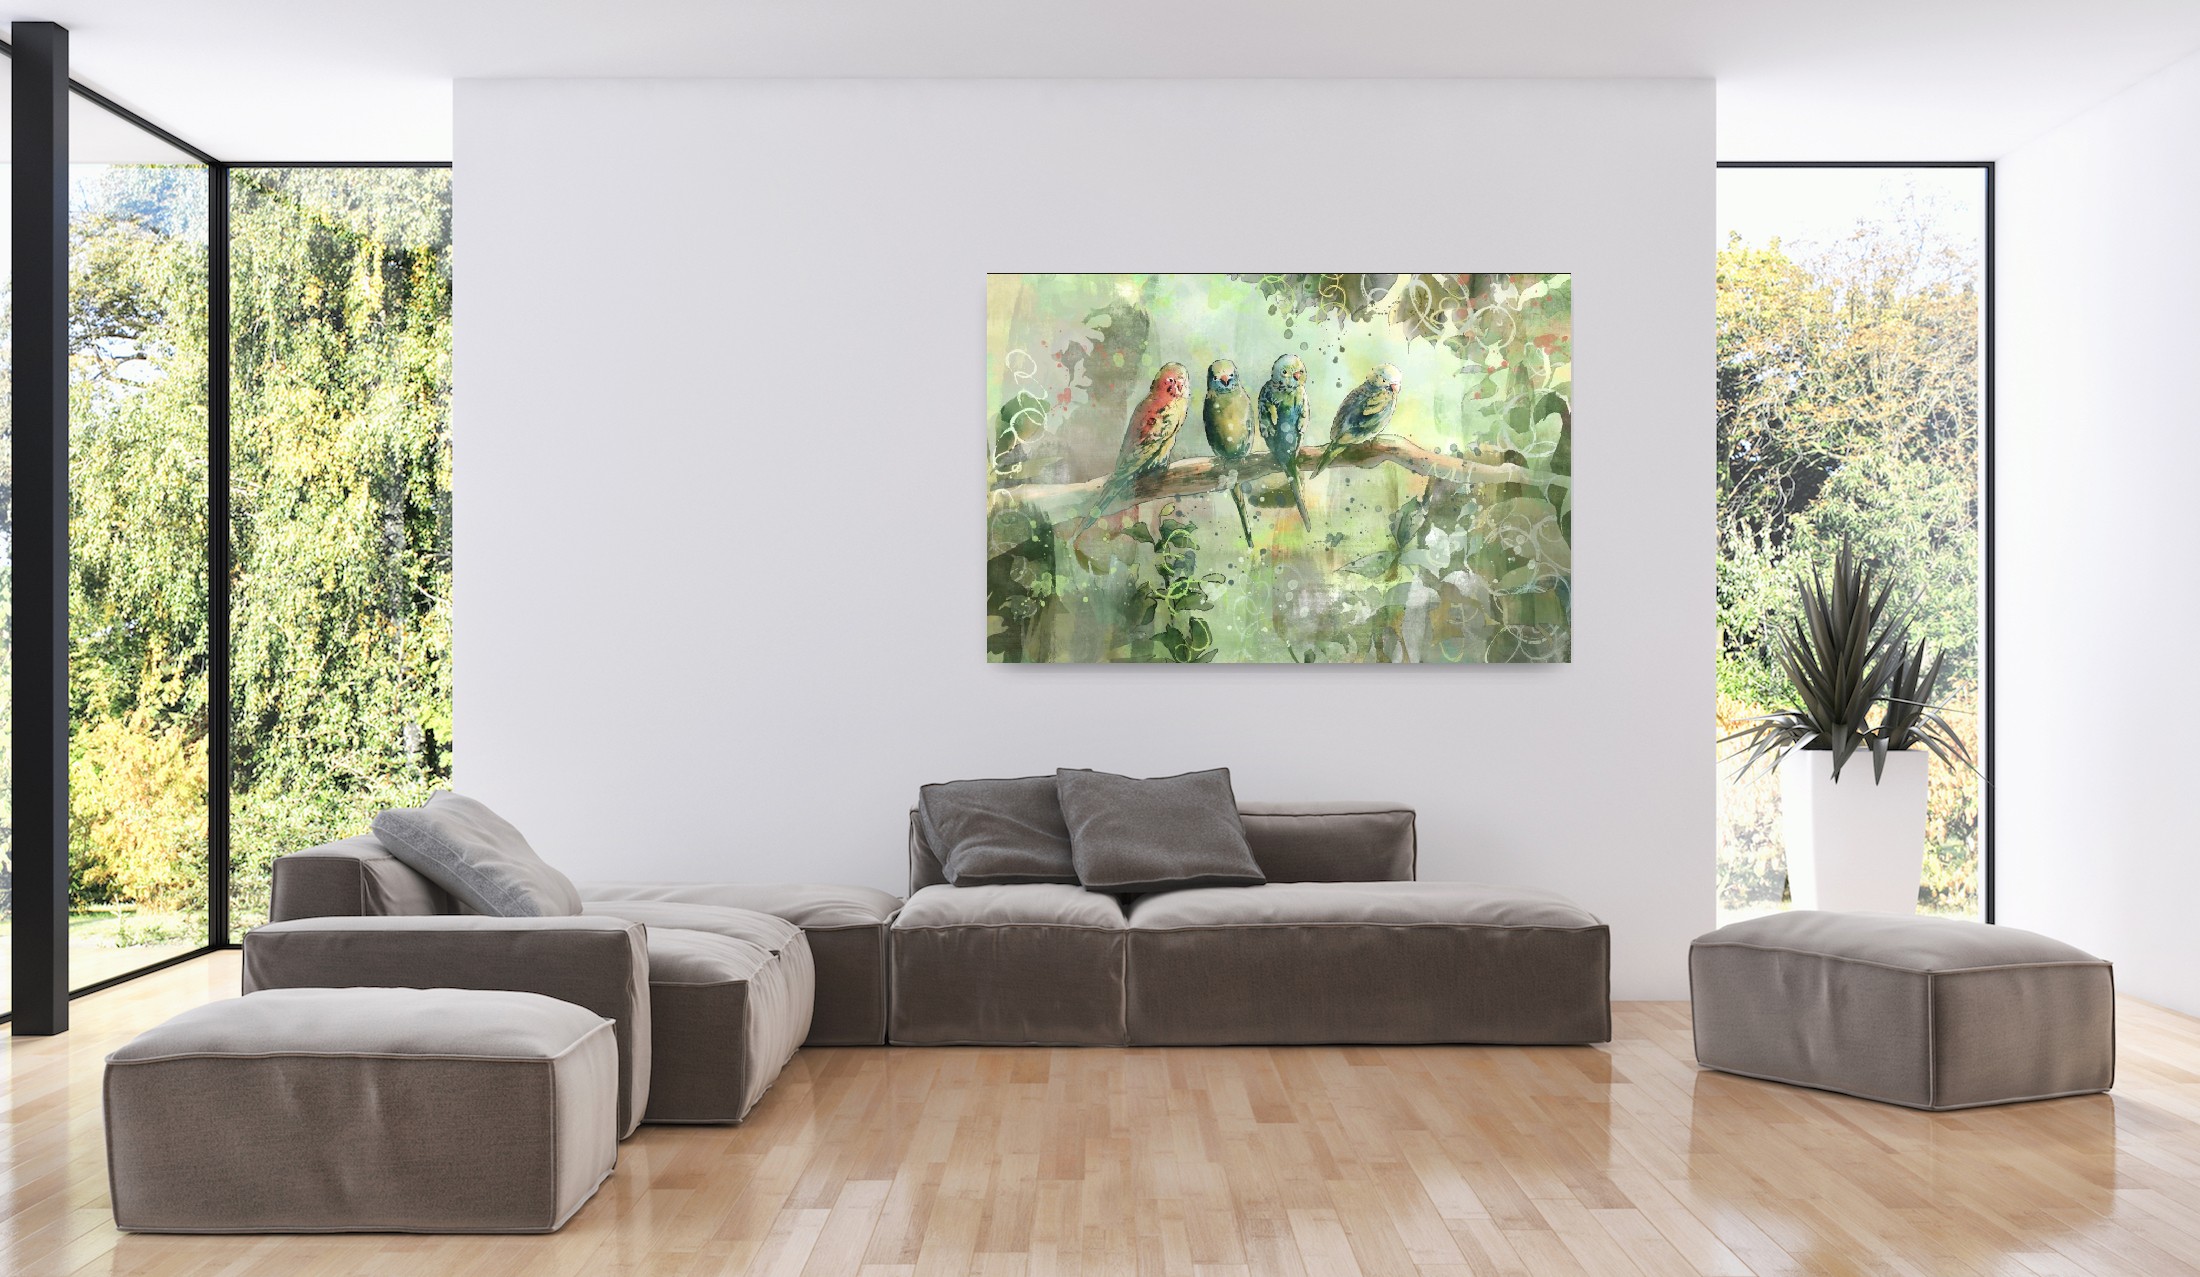 Jungle afbeelding met vier tropische vogels